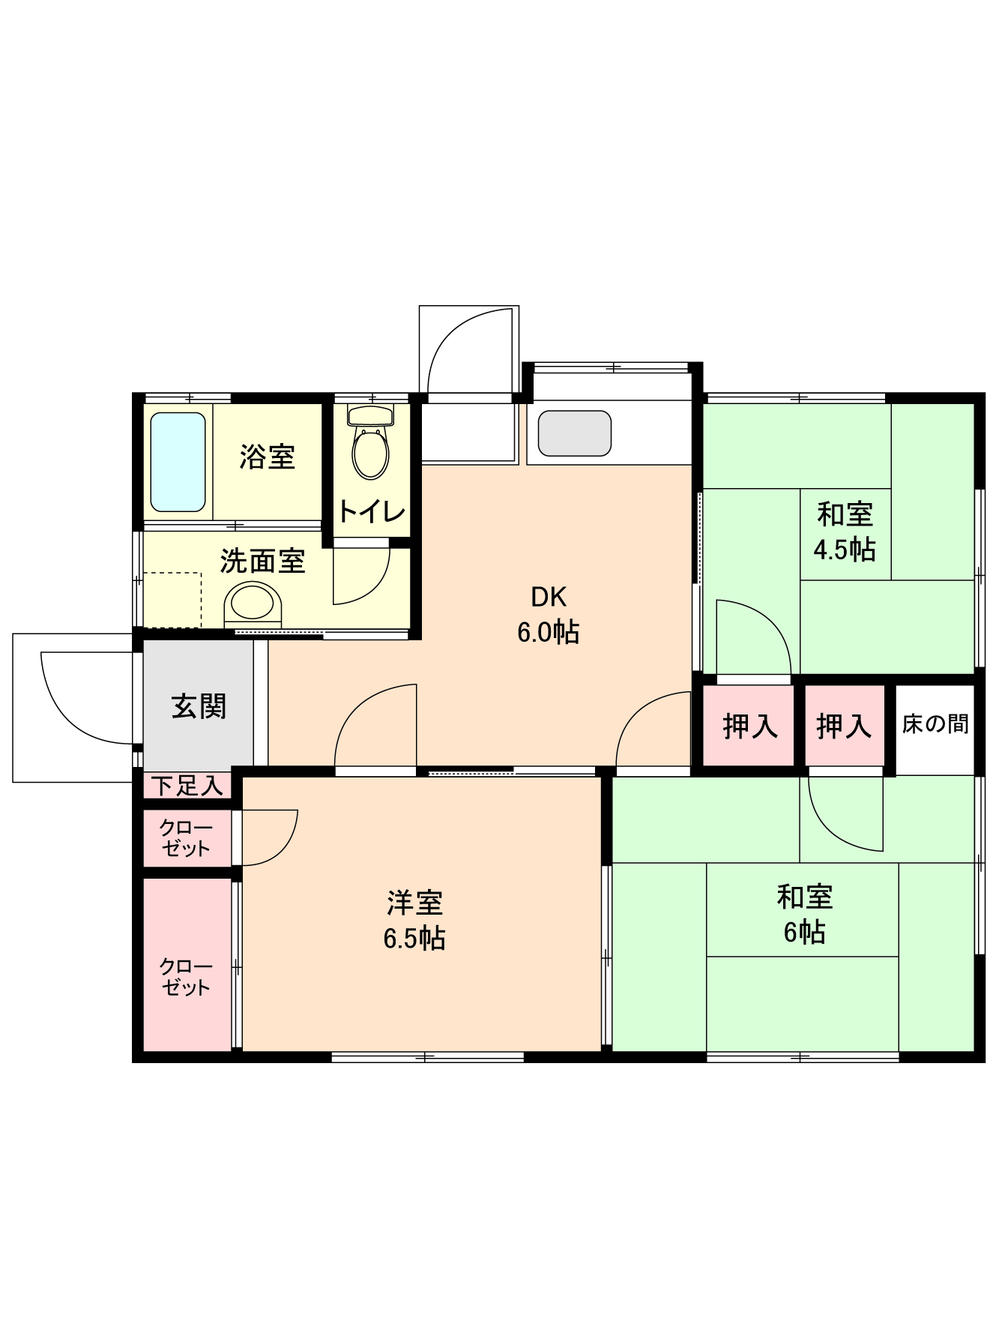 Floor plan. 18.6 million yen, 3DK, Land area 181.25 sq m , Building area 55.68 sq m